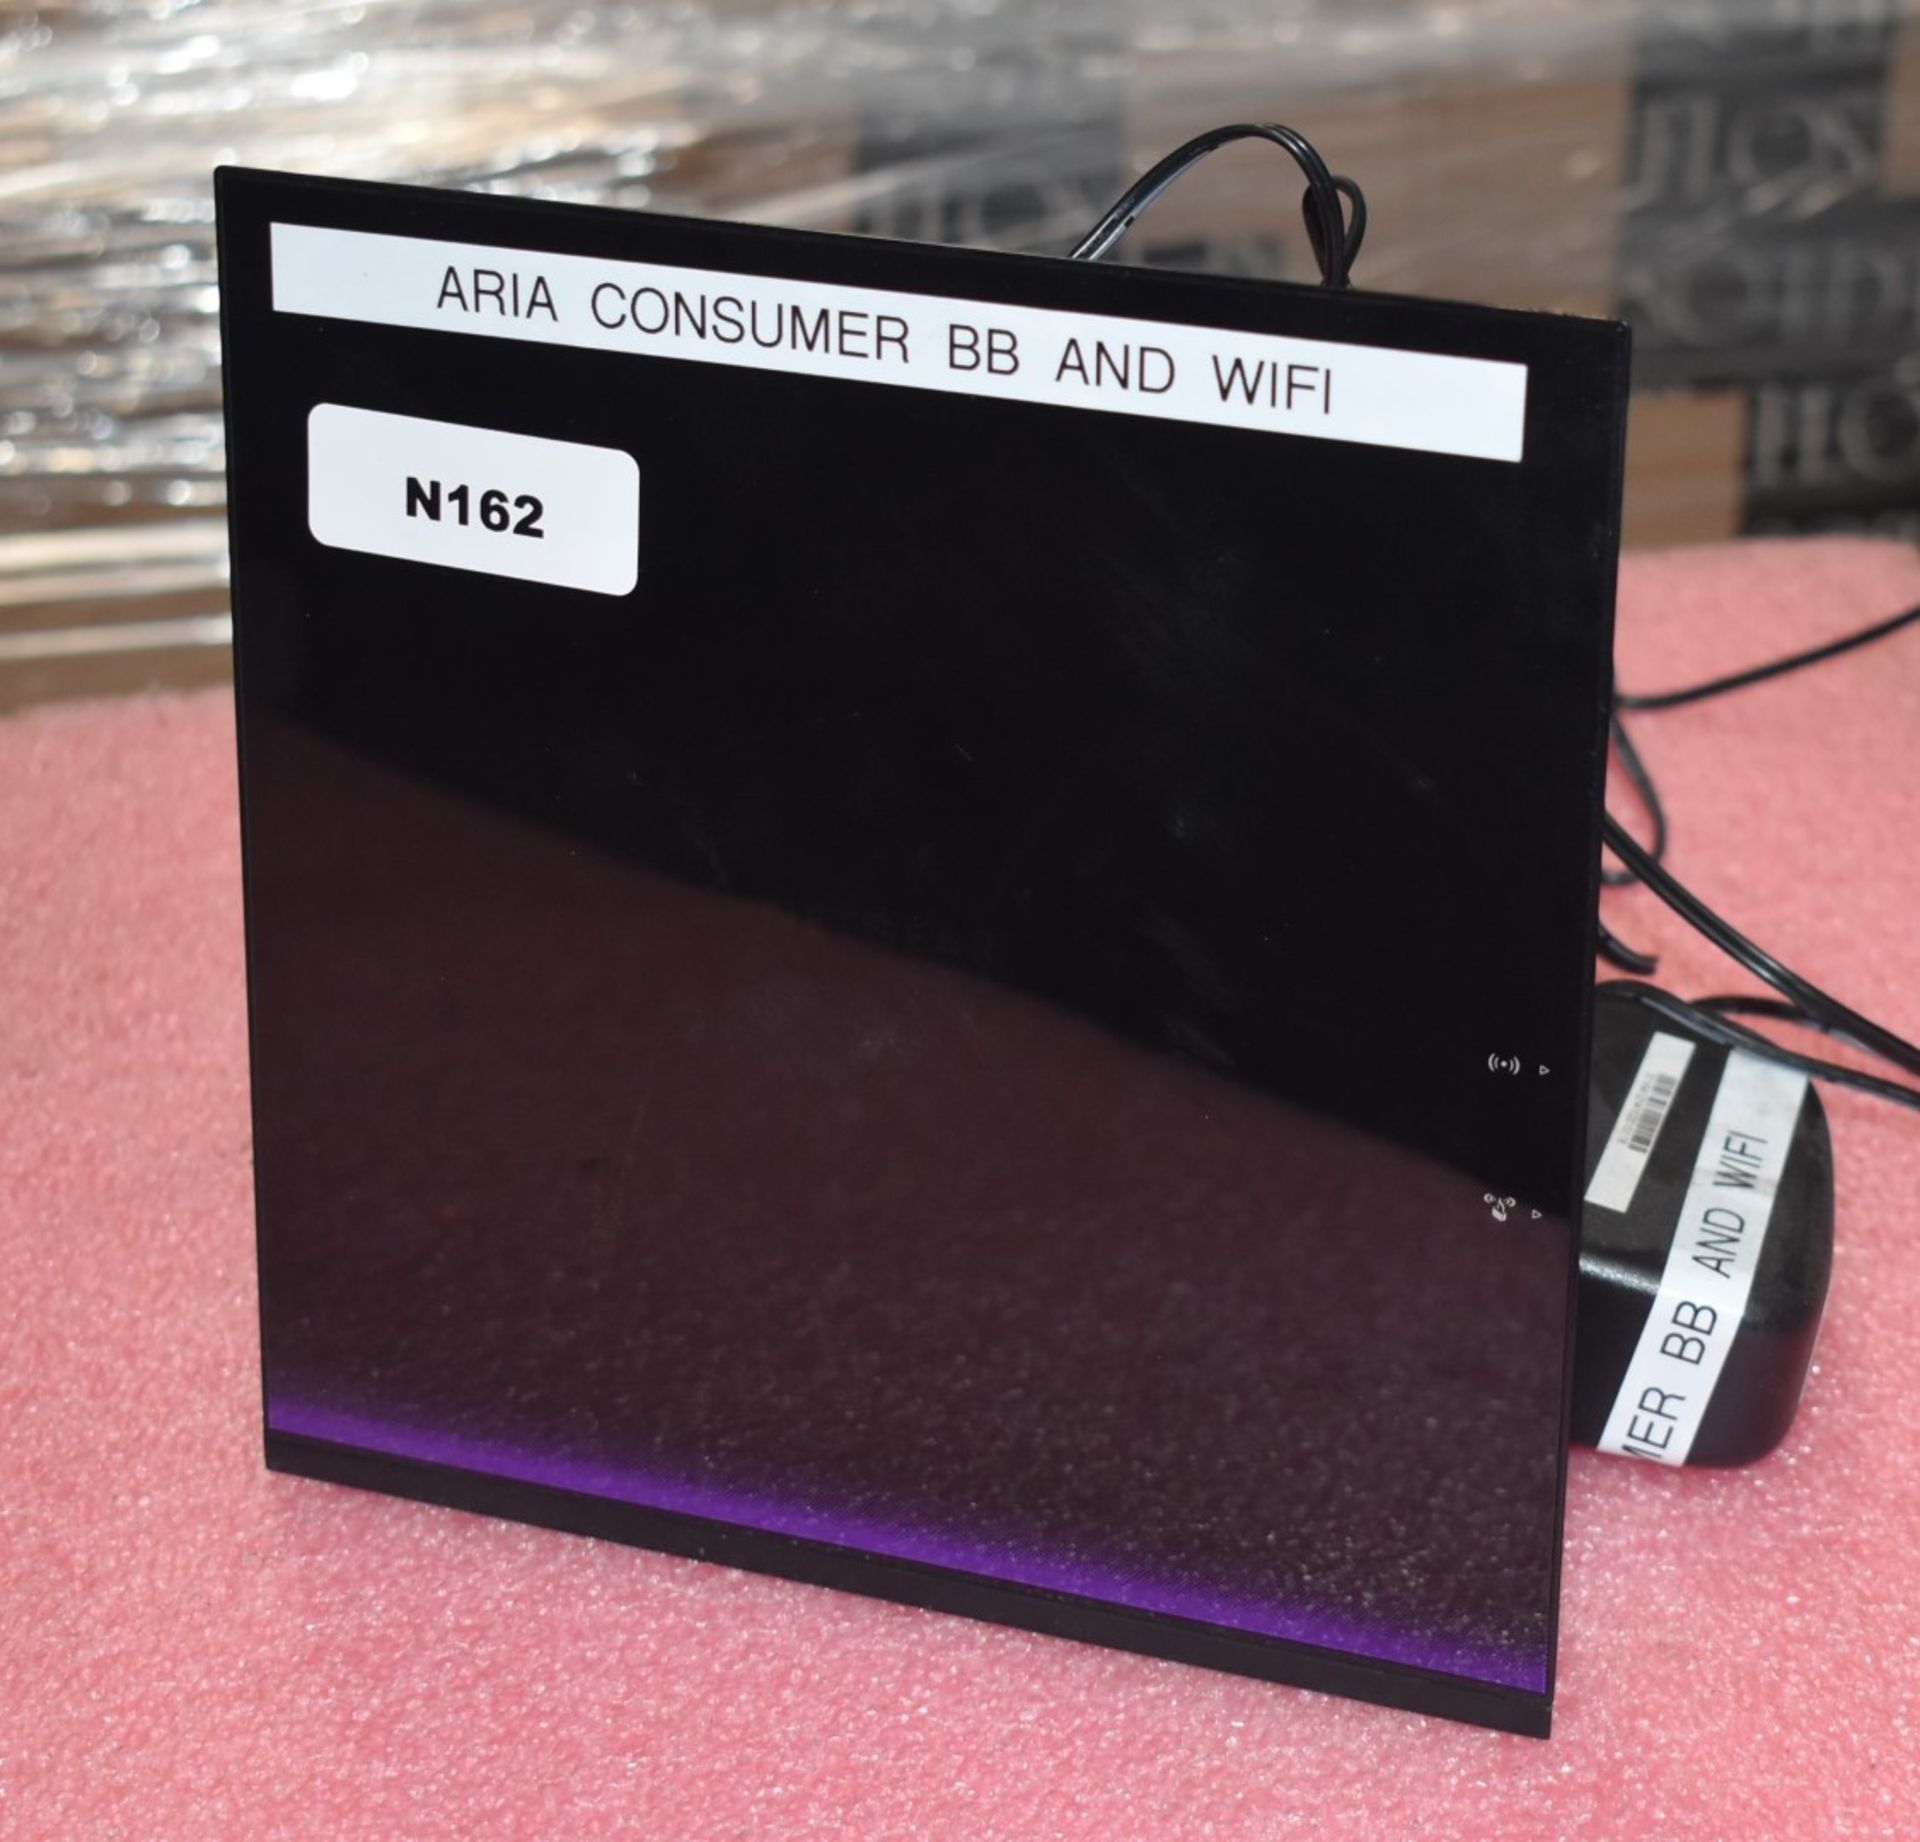 1 x Netgear D6400 AC1600 WiFi VDSL/ADSL Modem Router - Includes Power Adaptor